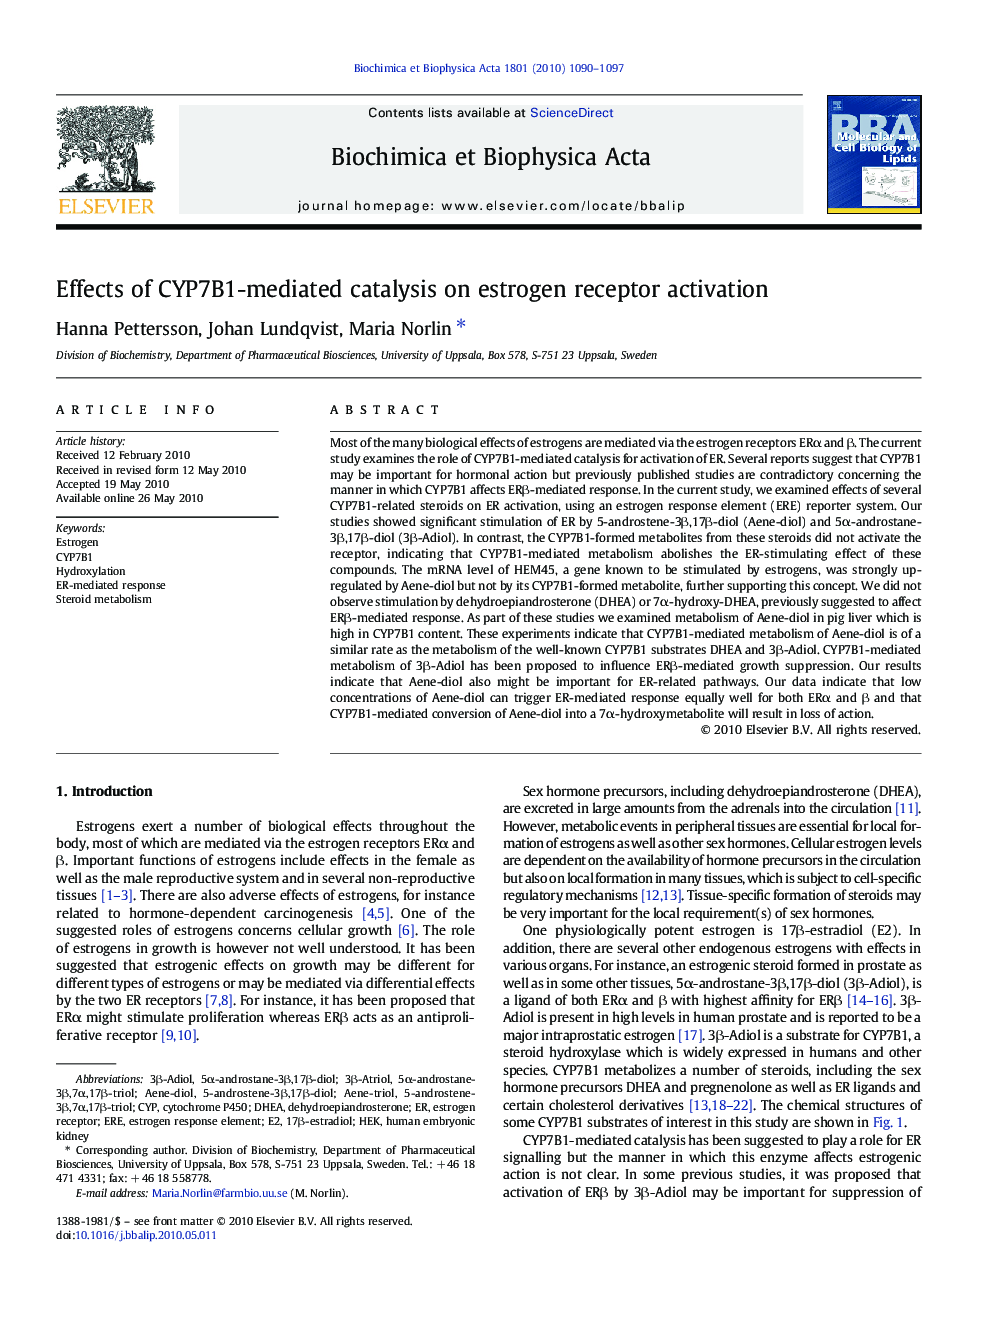 Effects of CYP7B1-mediated catalysis on estrogen receptor activation